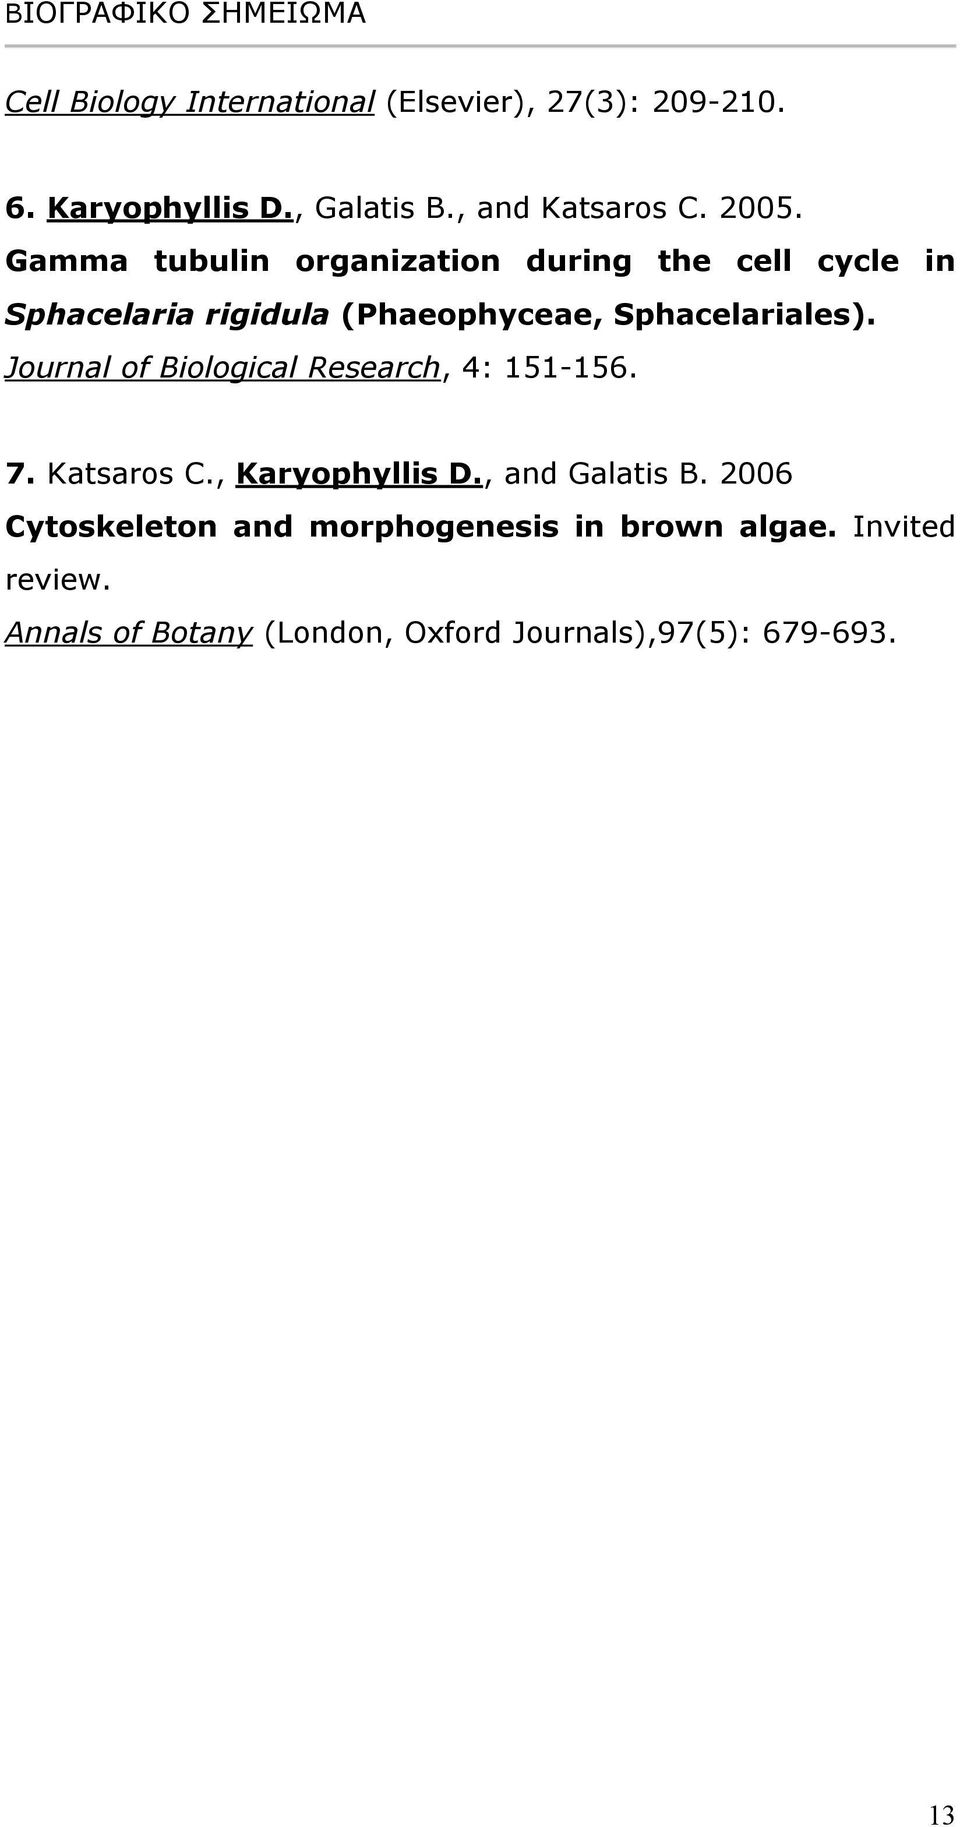 Journal of Biological Research, 4: 151-156. 7. Katsaros C., Karyophyllis D., and Galatis B.